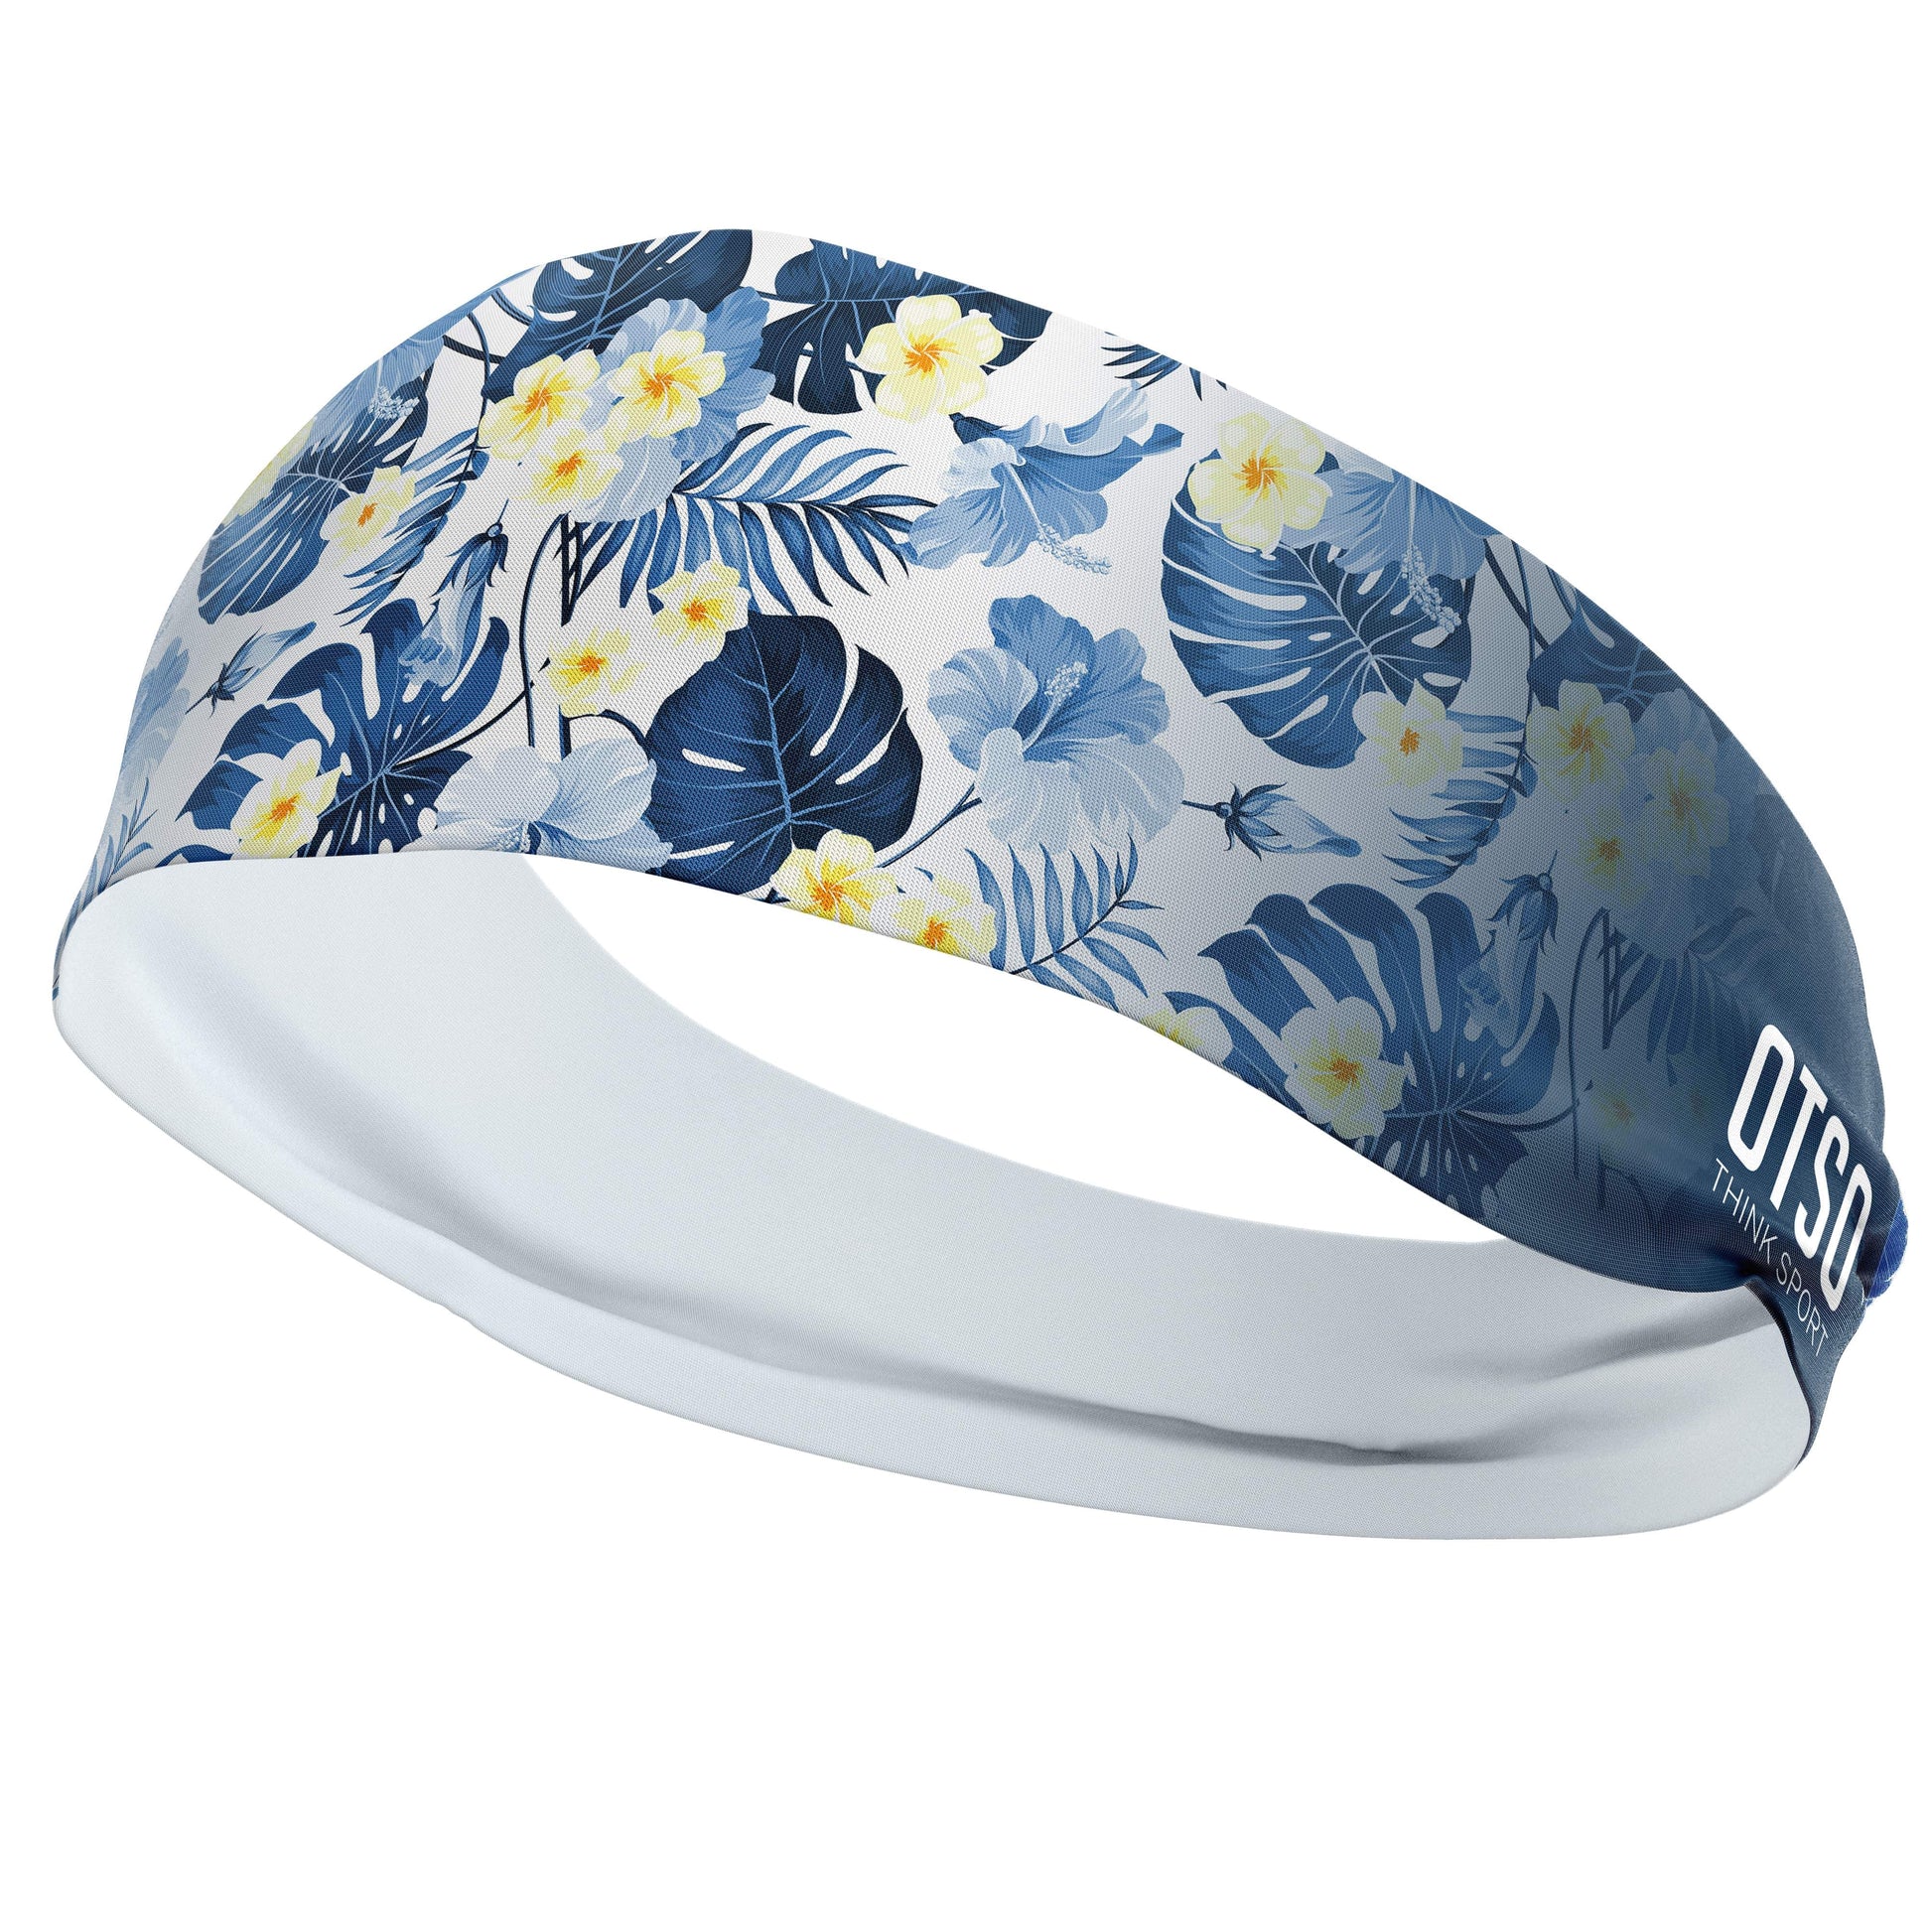 Headband Otso de 12 centímetros de grosor y estampado floral. El producto es unisex y de talla única